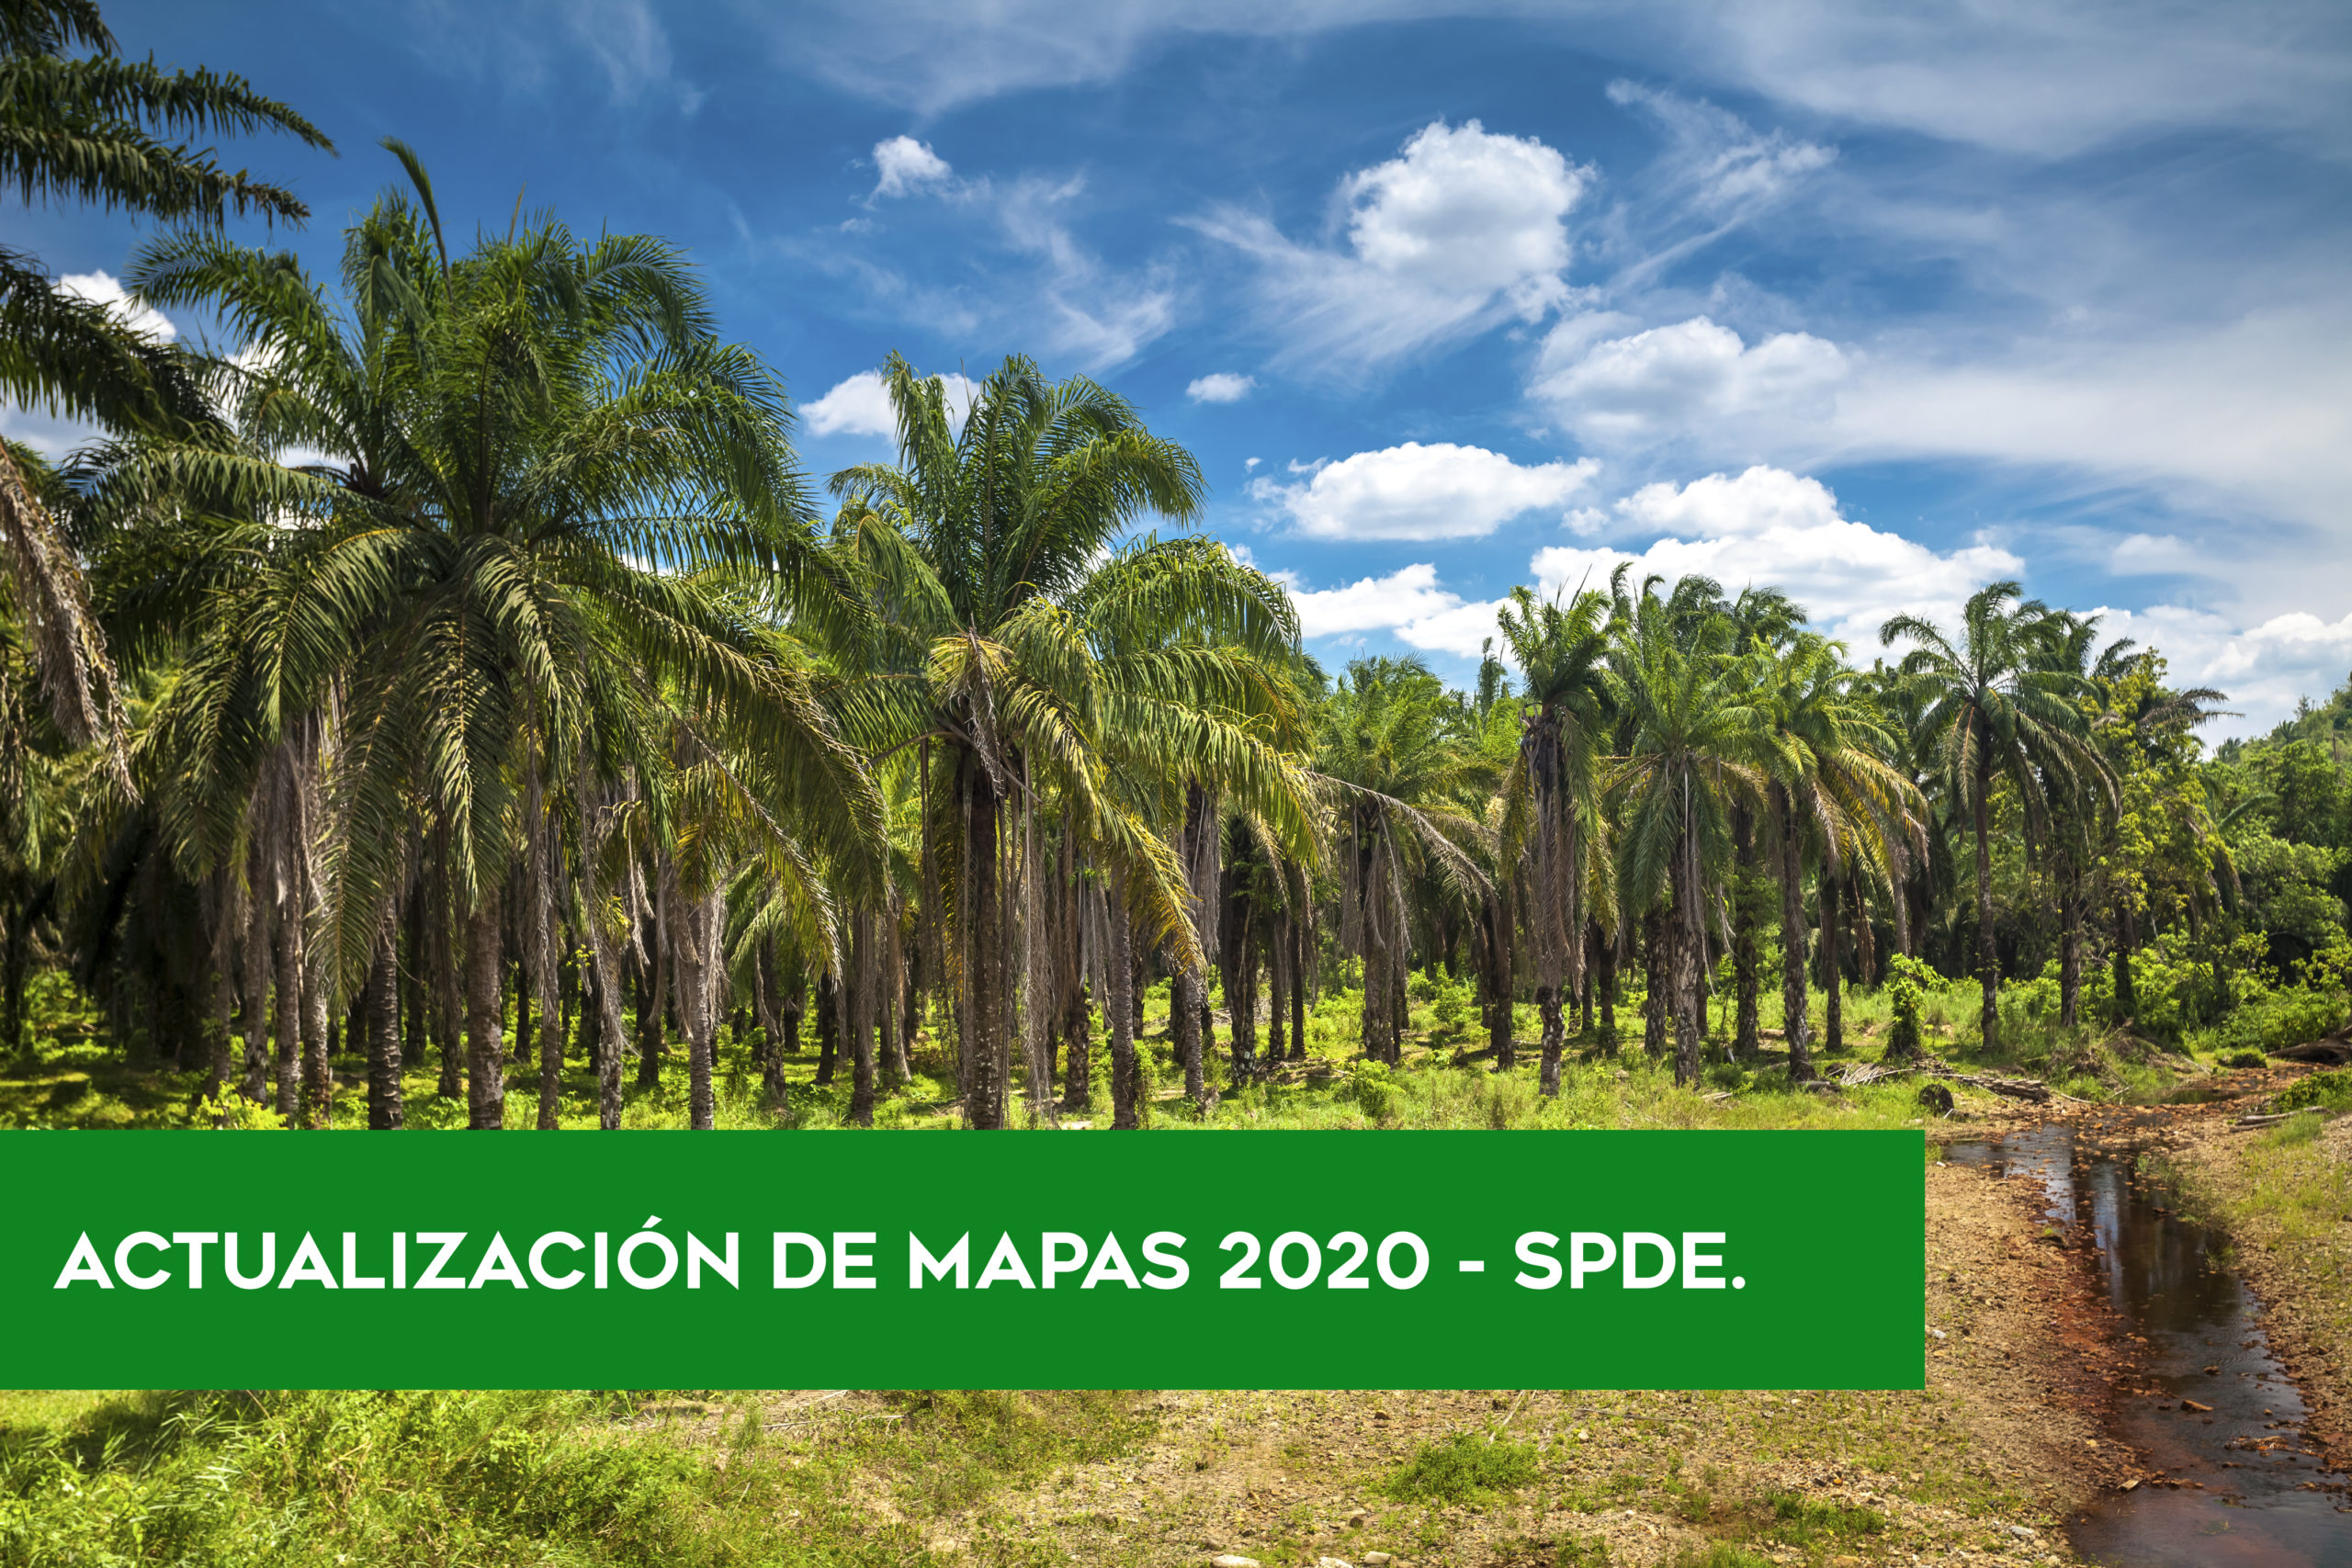 ACTUALIZACIÓN DE MAPAS DE PALMA ACEITERA 2020 – SPDE.